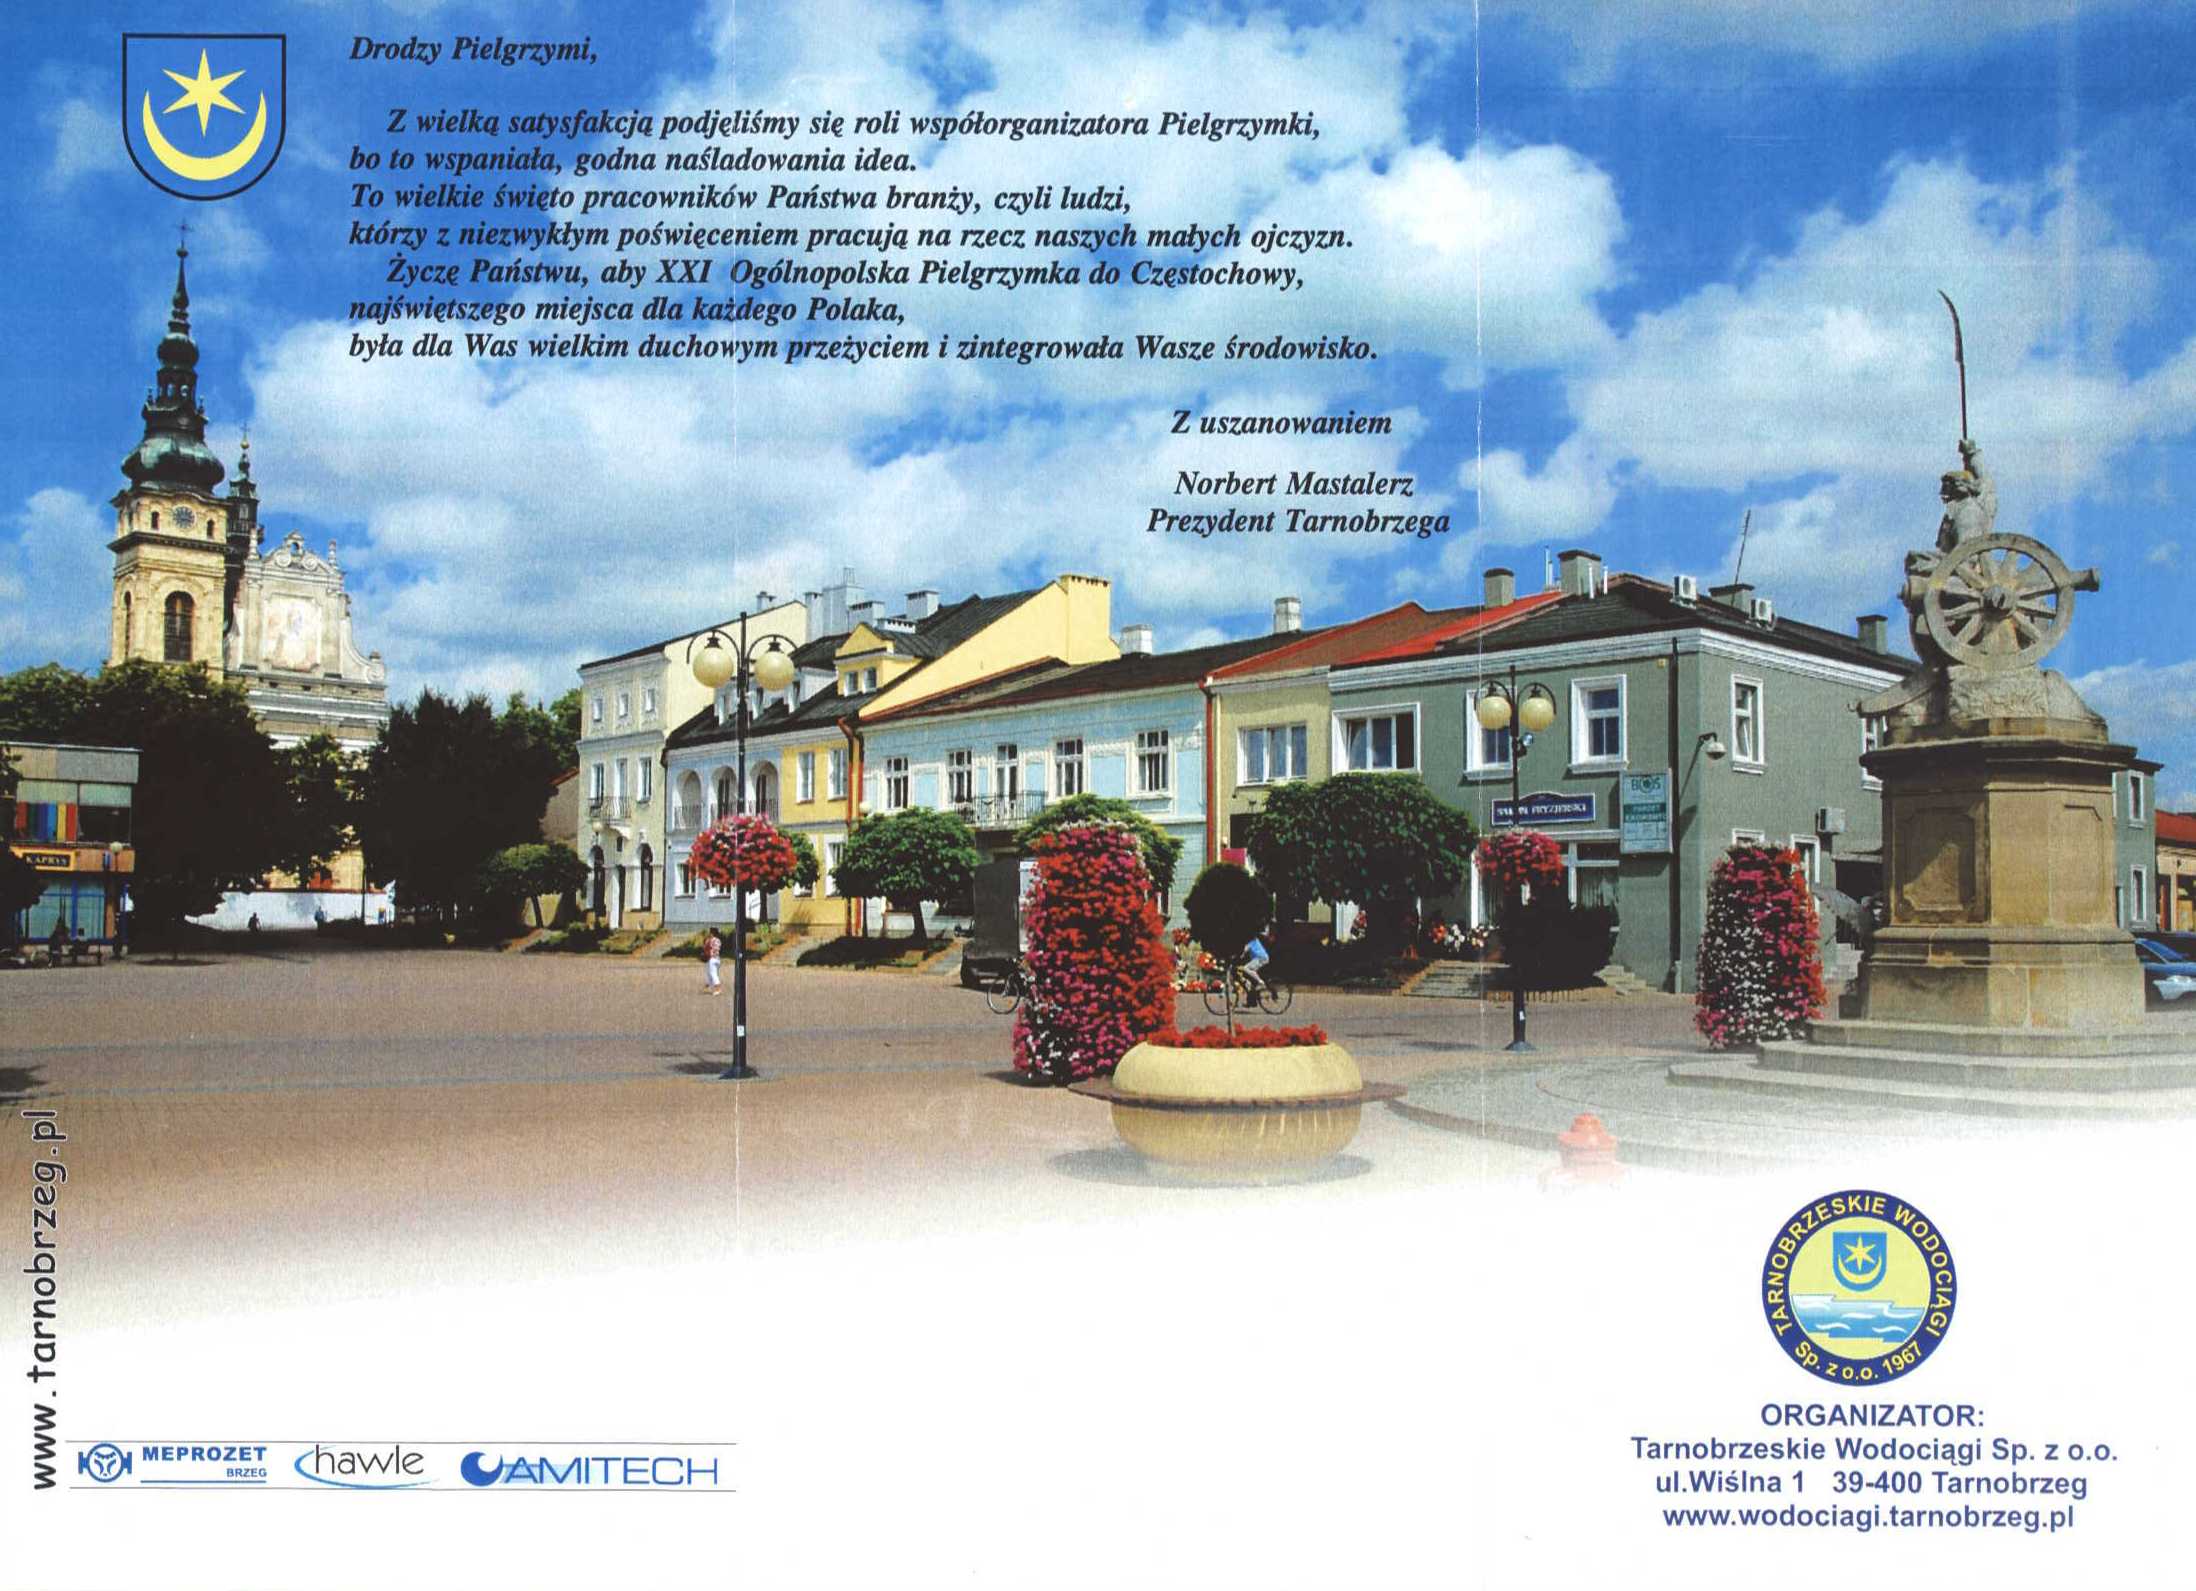 pelgrzymka 2011 broszura strona 1